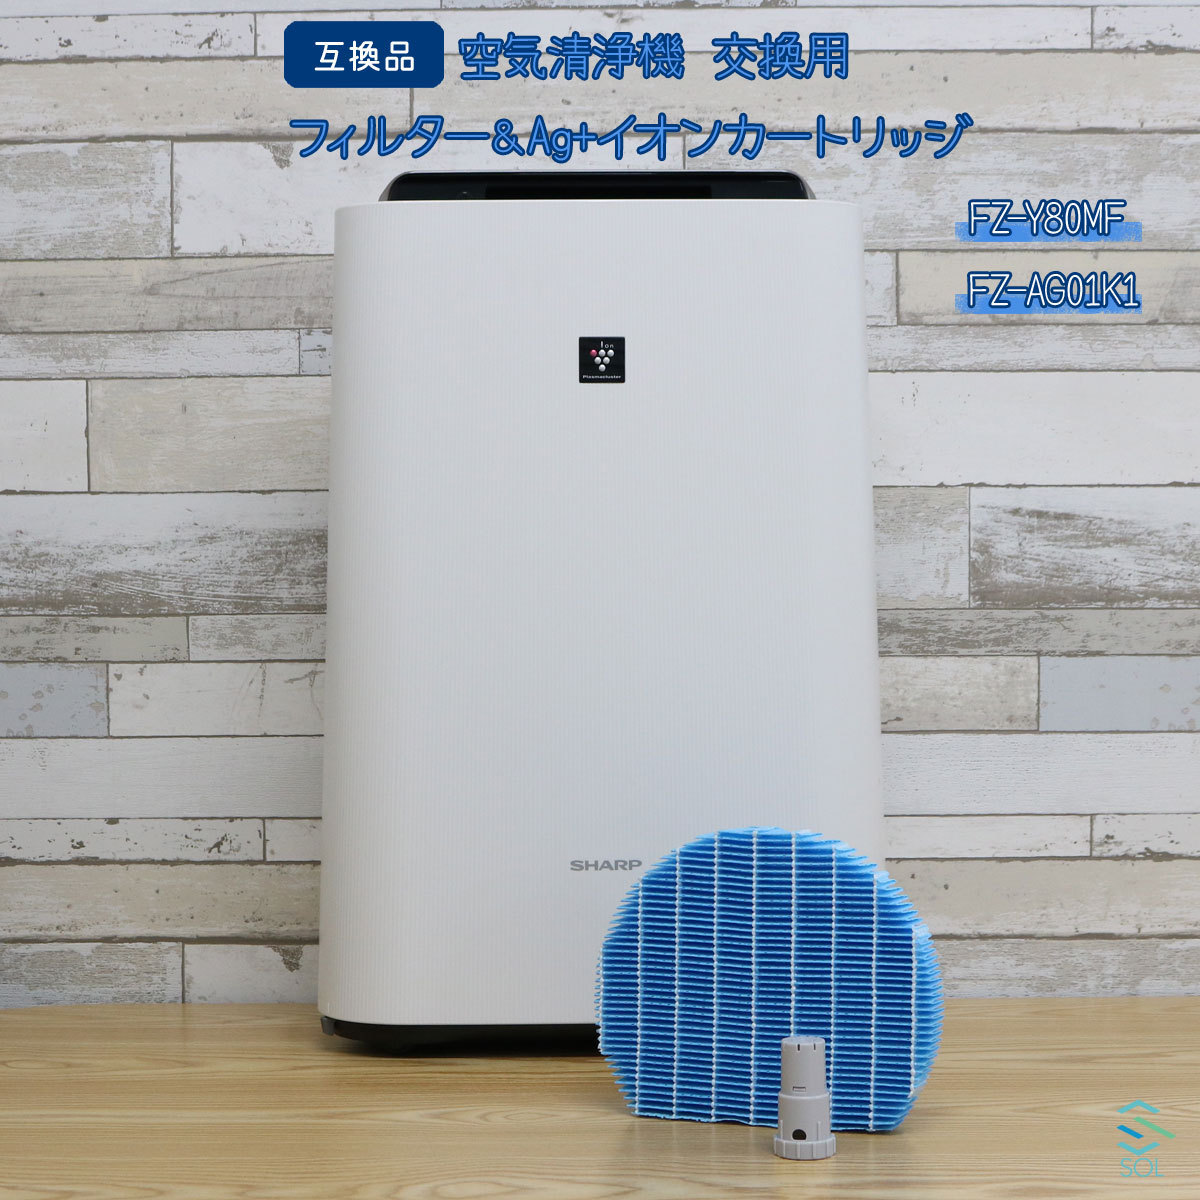 世界的に有名な 21個まとめ売り SHARP 空気清浄機 キッチン用脱臭フィルター FZKF70K2